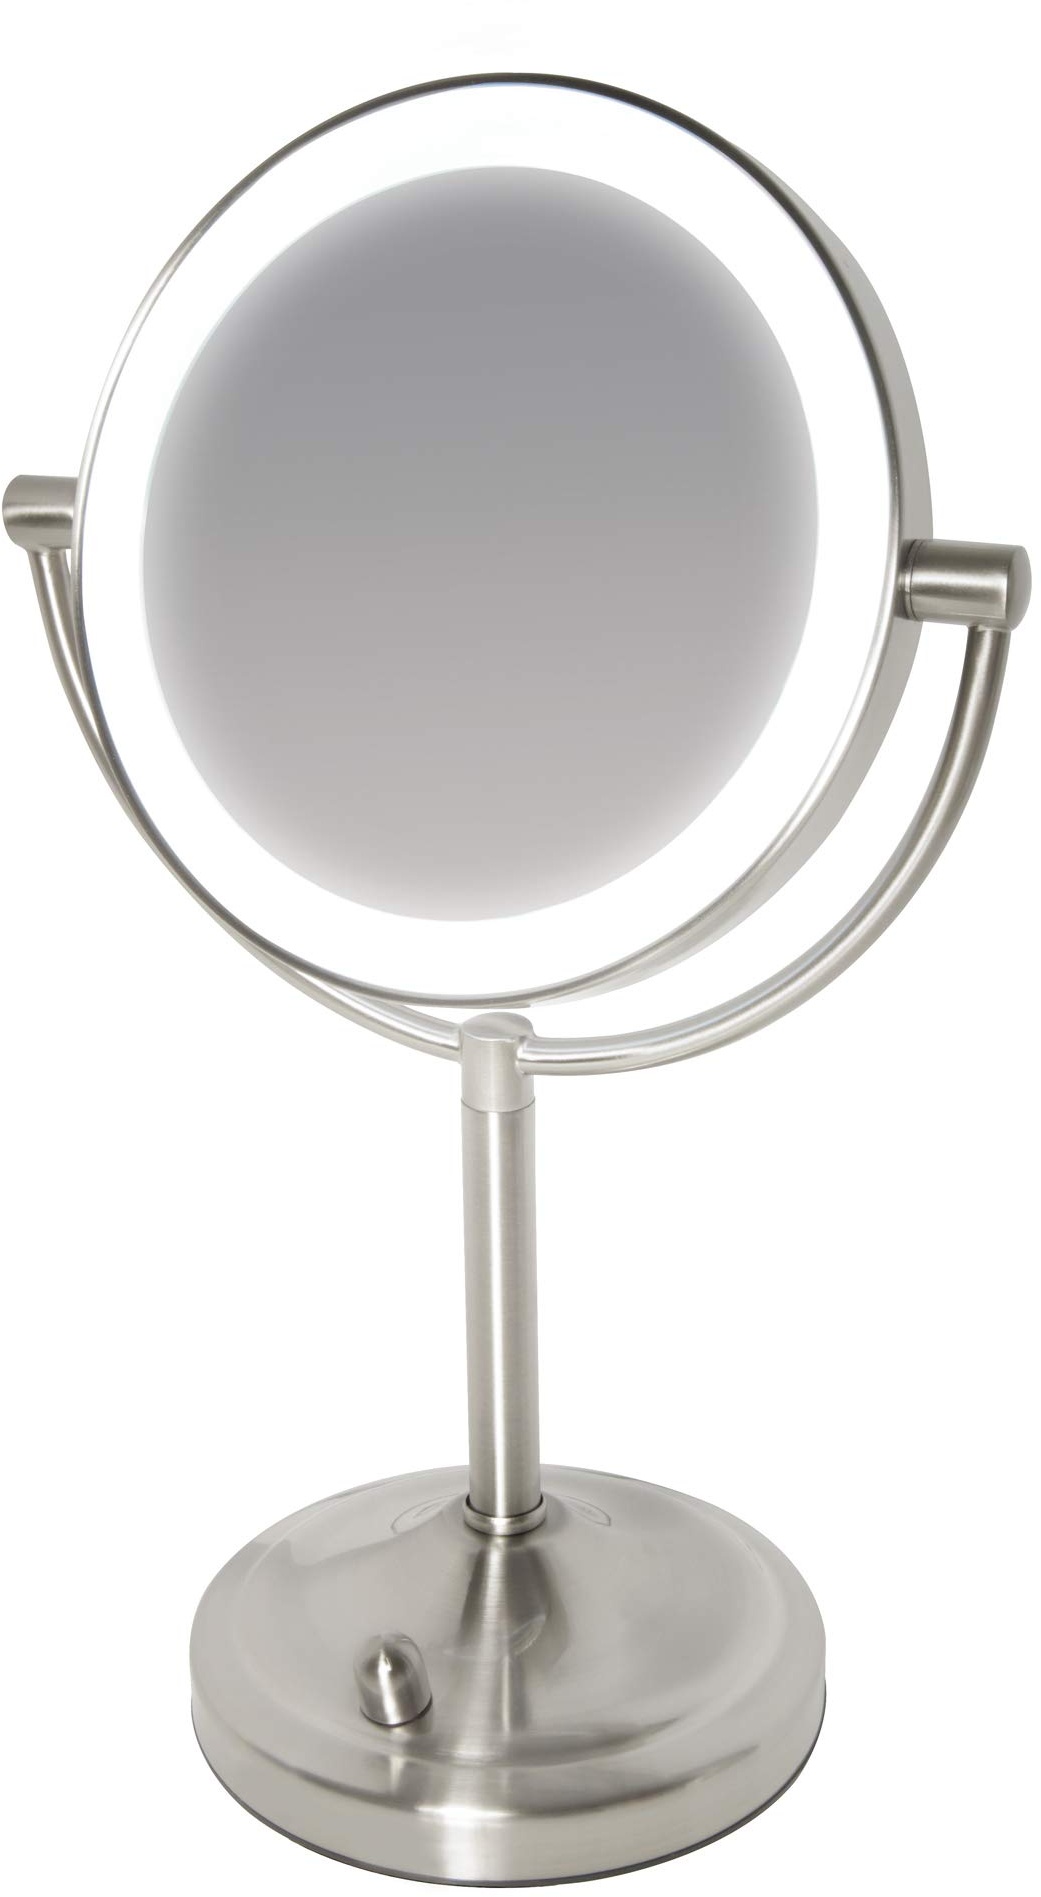 HoMedics Kosmetikspiegel, Doppelseitiger Spiegel mit LED Beleuchtung, Dimmbar, ideal für Schminktisch und Badezimmer, Make-Up & Styling, 7-fache Vergrößerung, Jeder Winkel, 1 Stück (1er Pack)